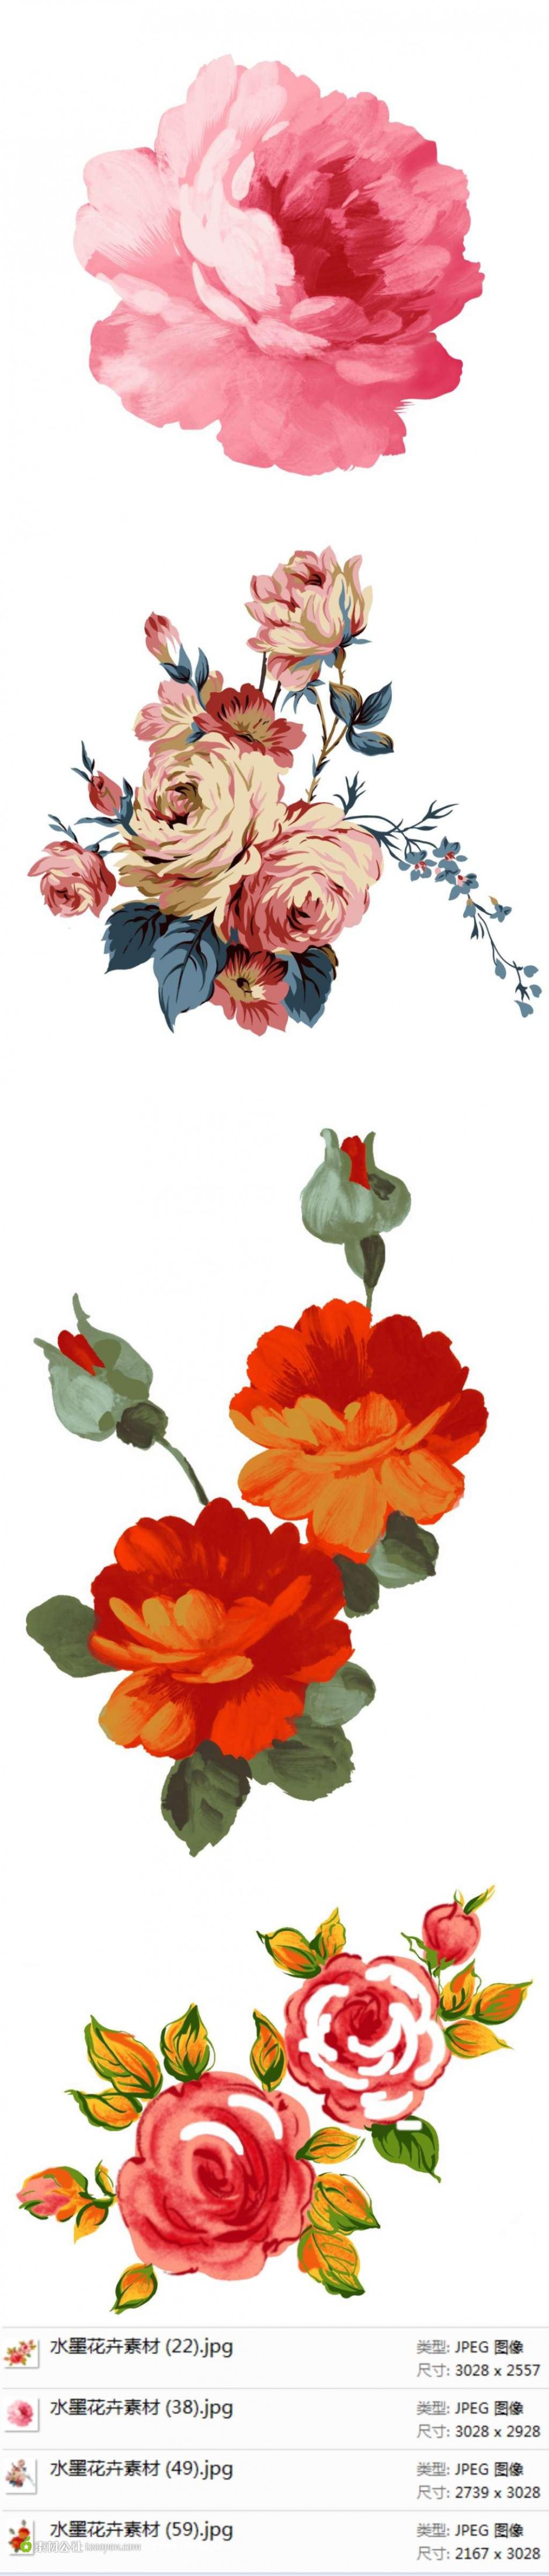 水墨素描玫瑰花插画图片